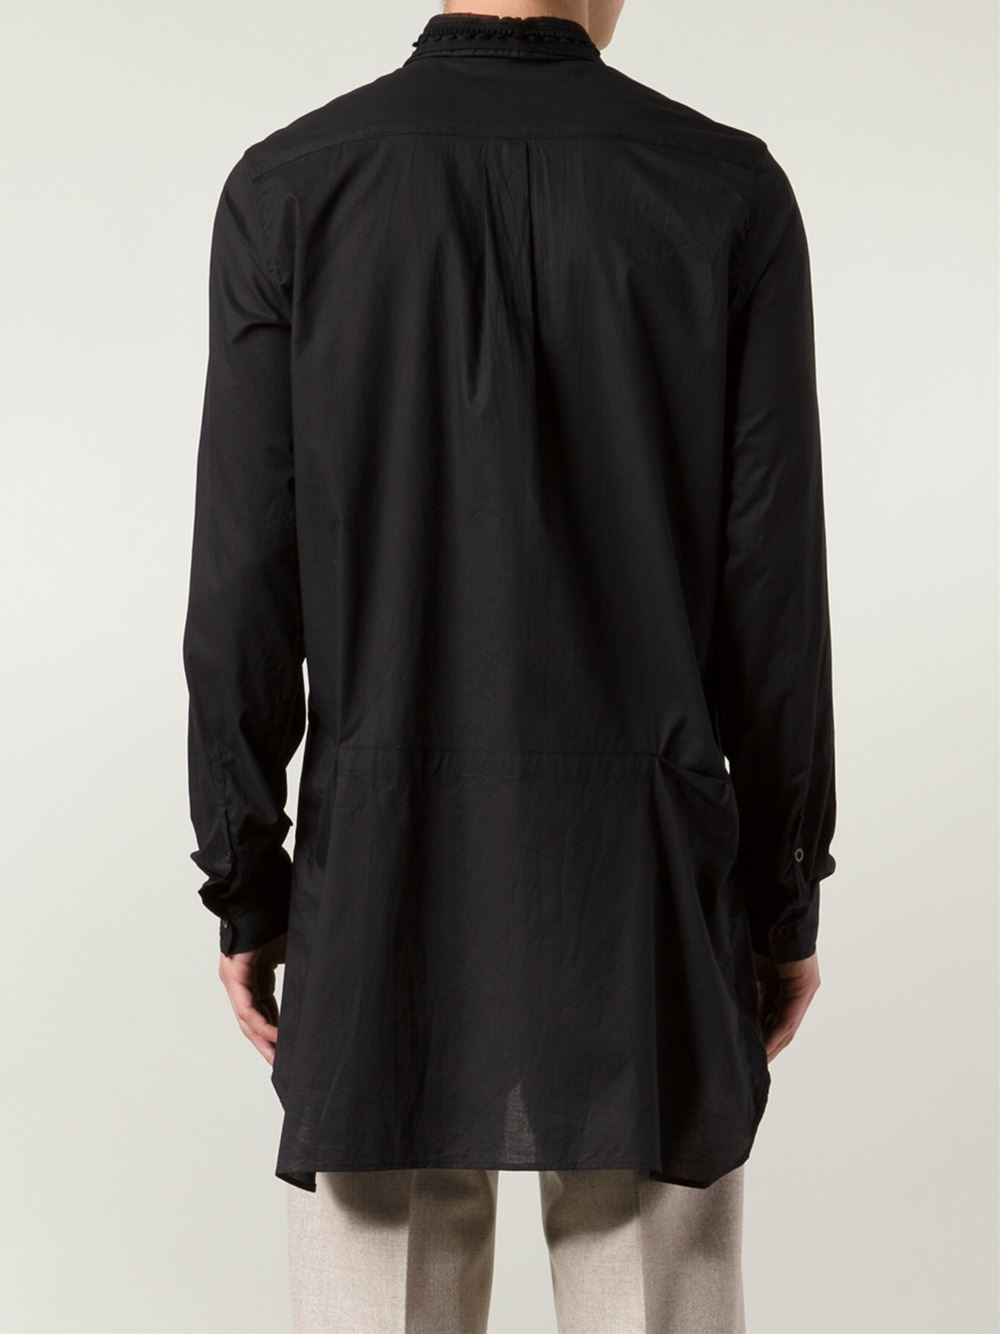 Ann demeulemeester Tassel Collar Long Shirt in Black for Men | Lyst